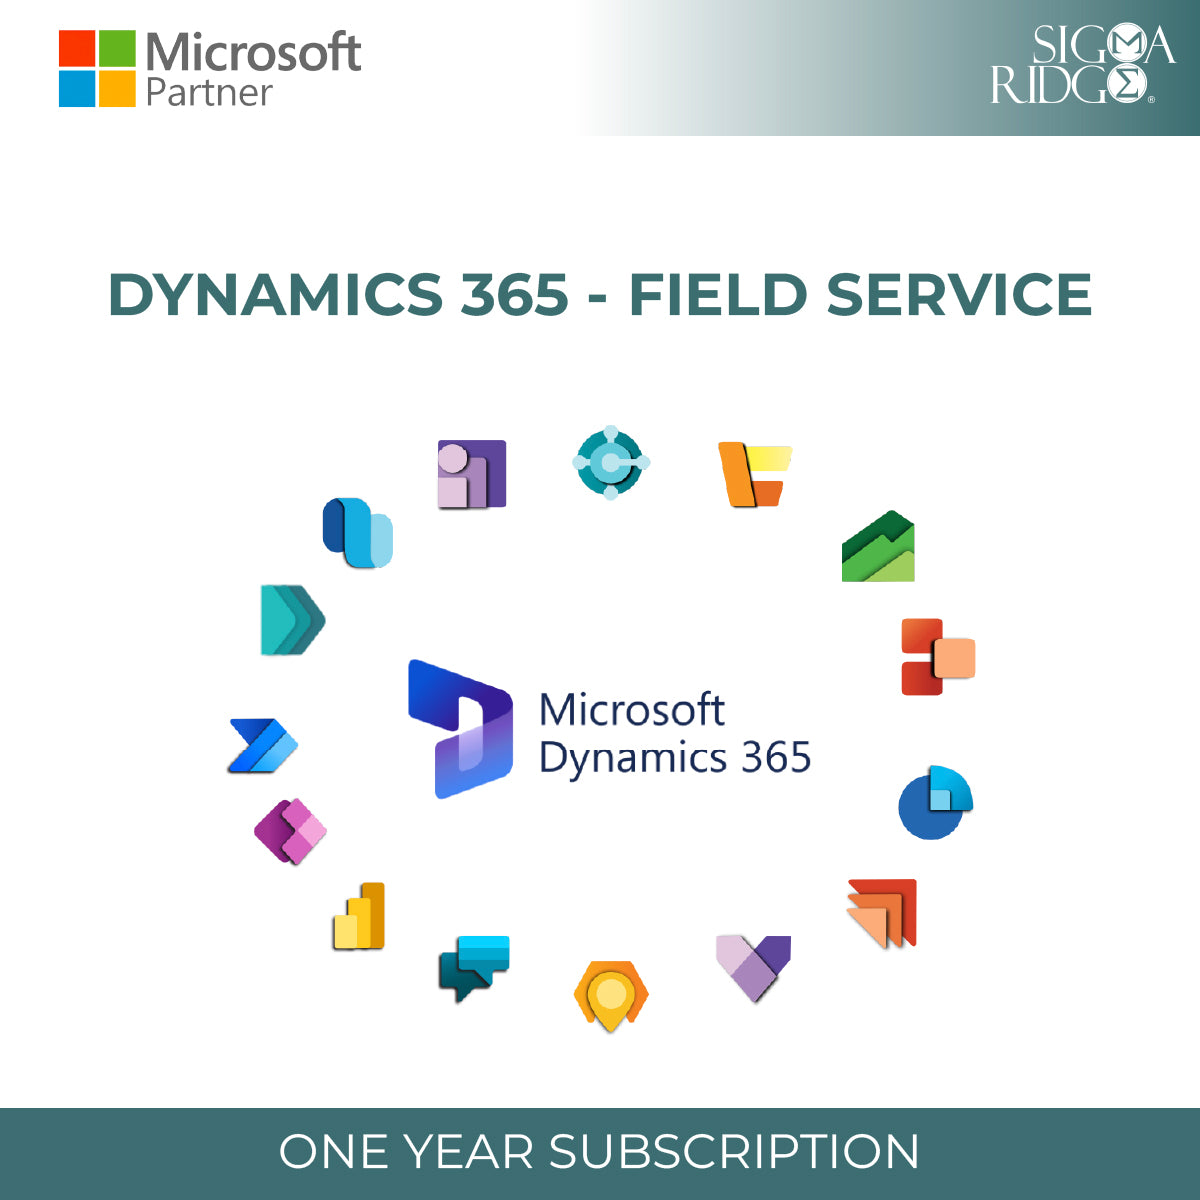 Servicio de campo de Dynamics 365